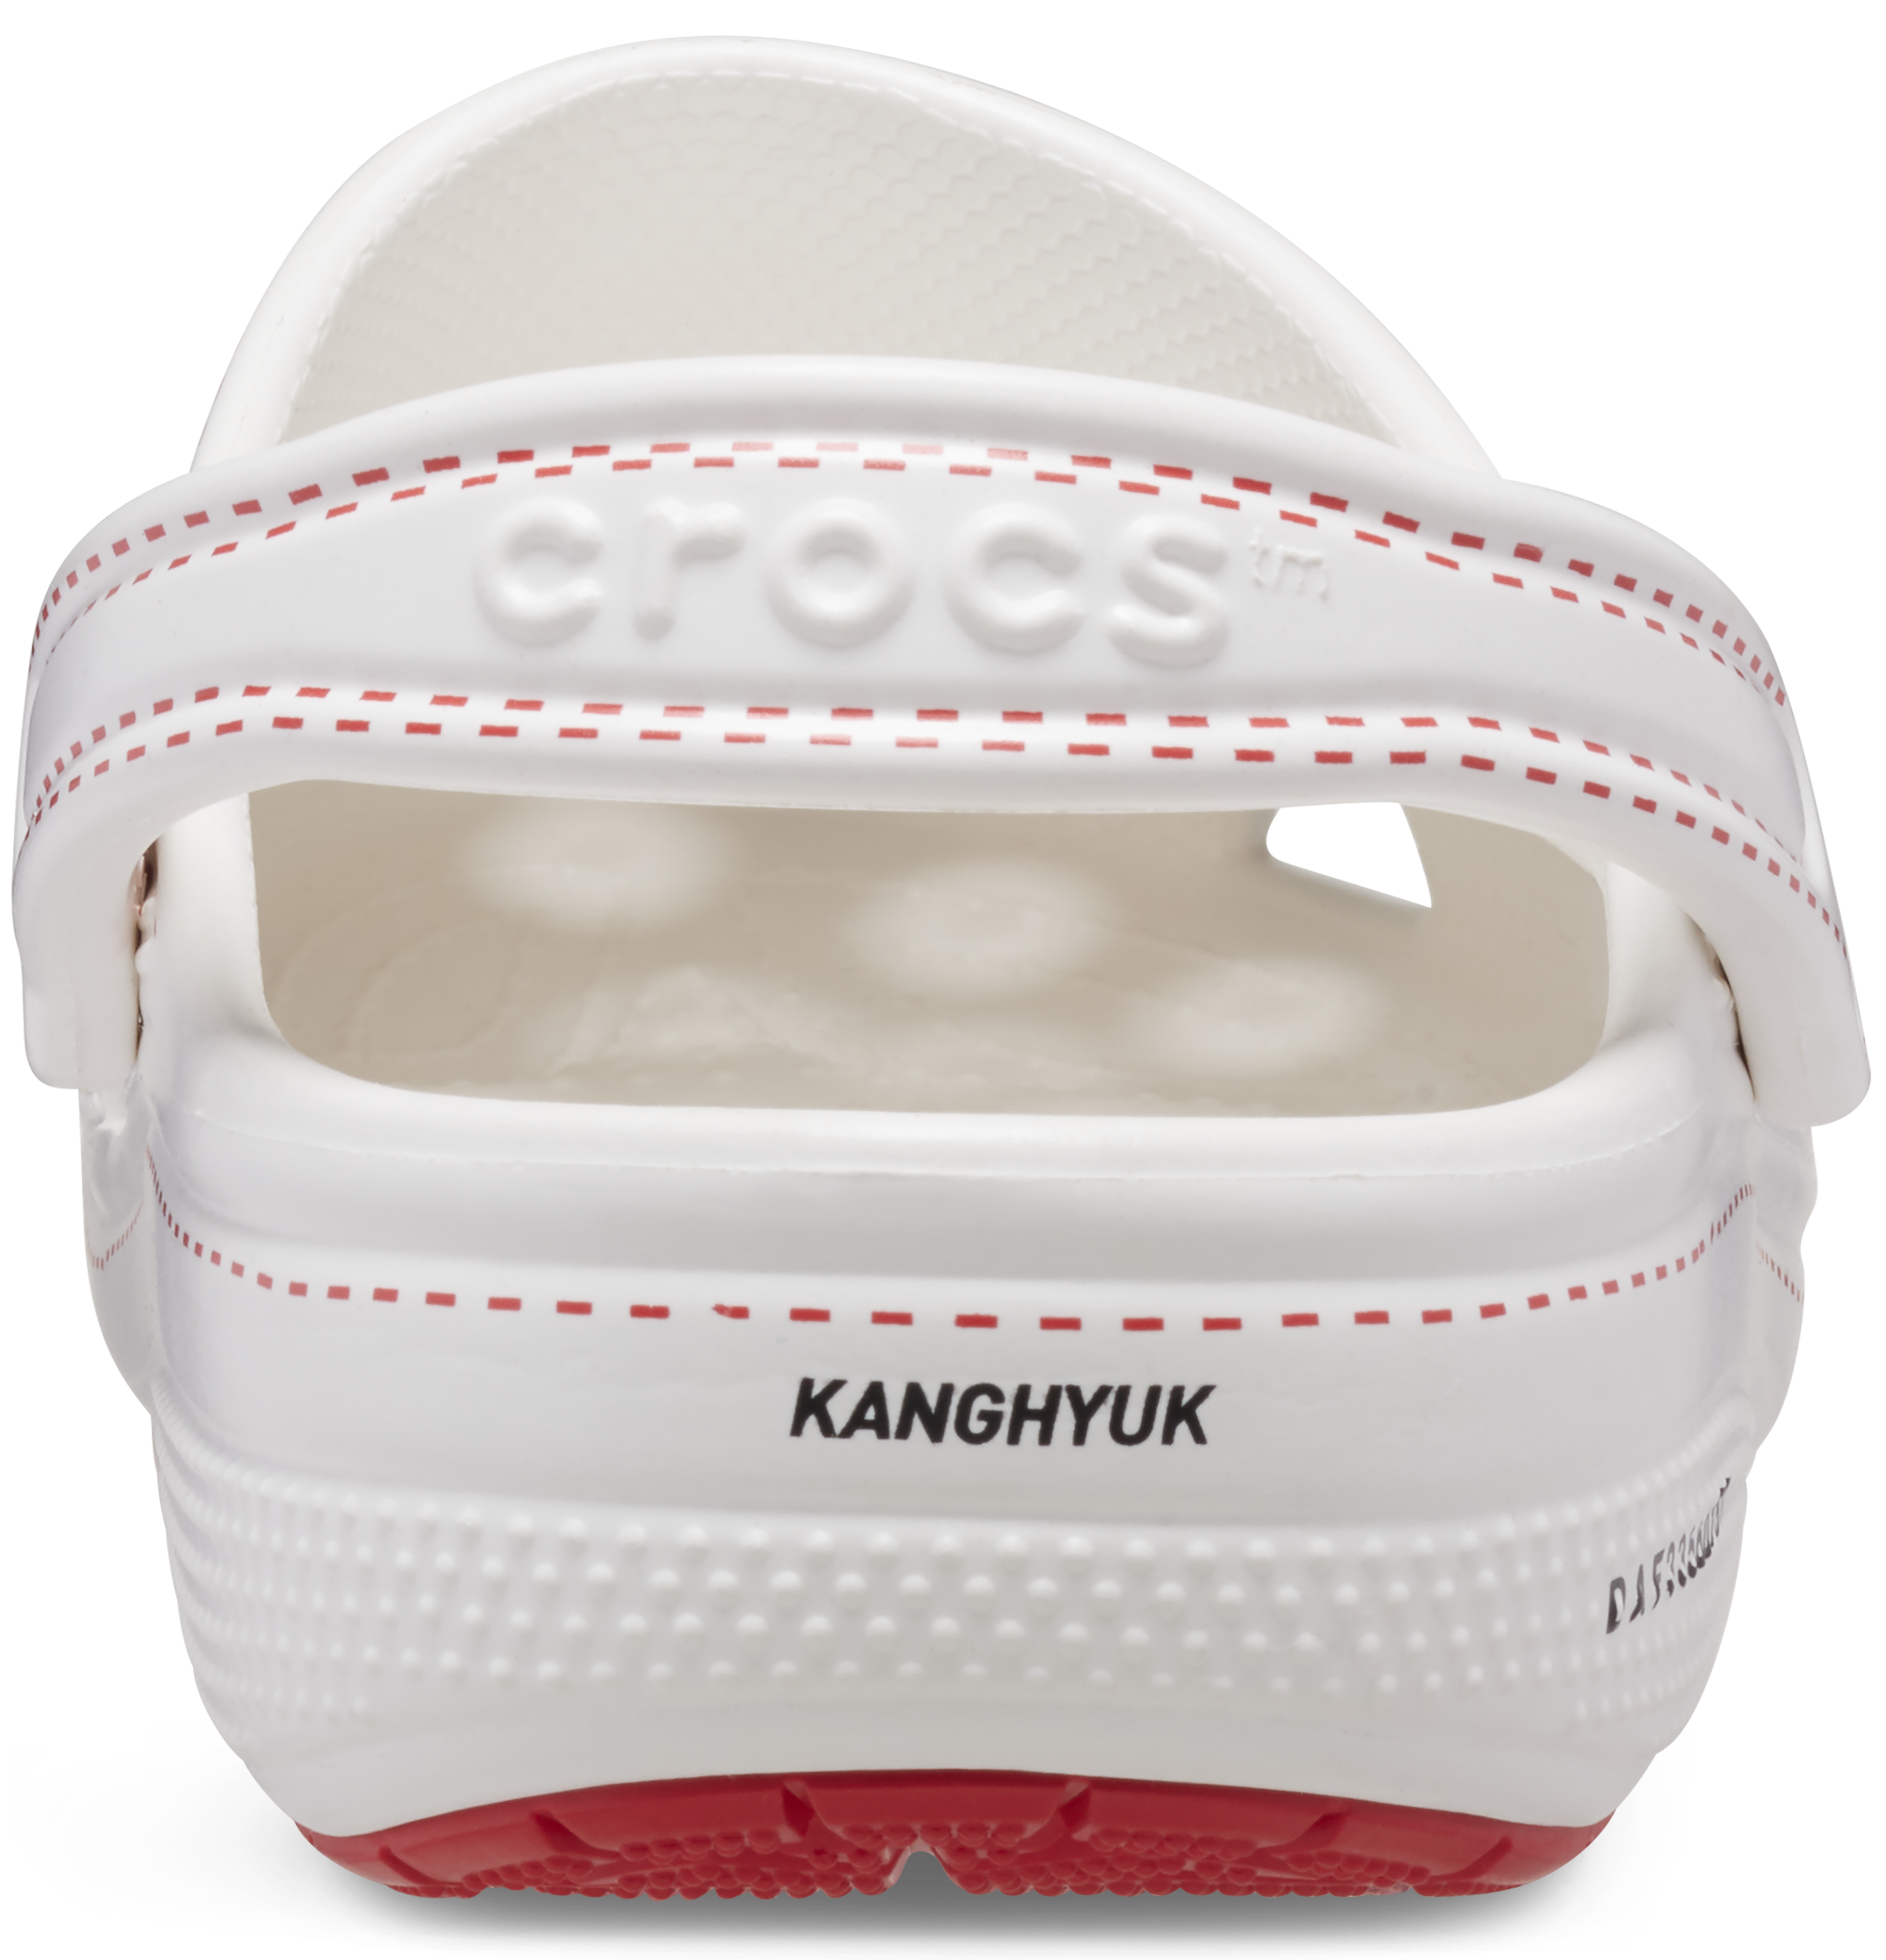 KANGHYUK X CROCS - WHITE / RED